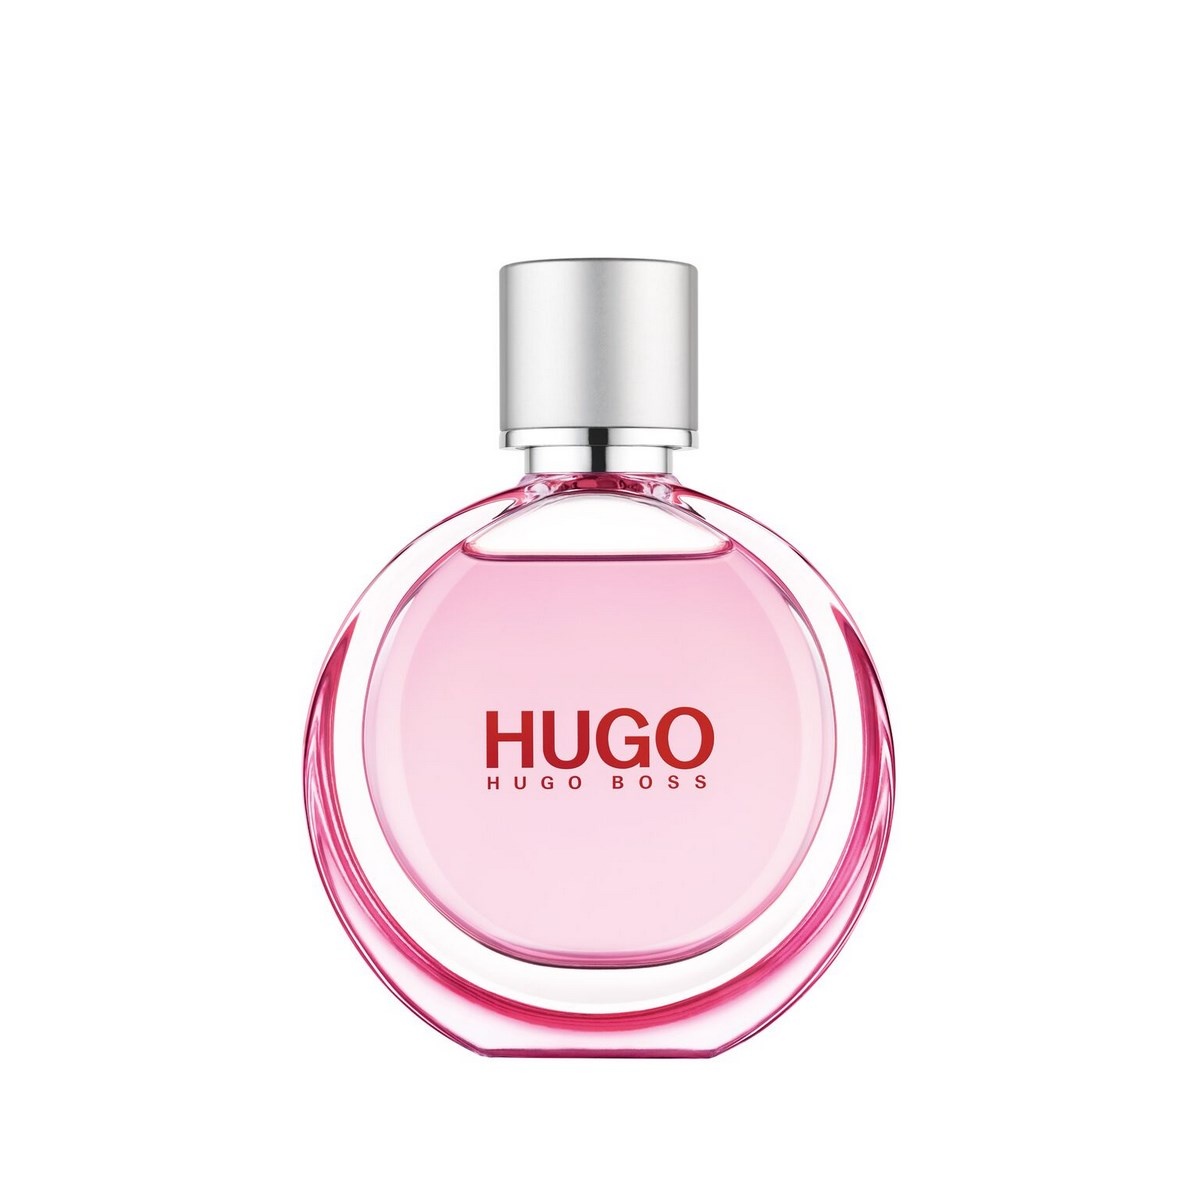  HUGO Woman Extreme Eau de Parfum